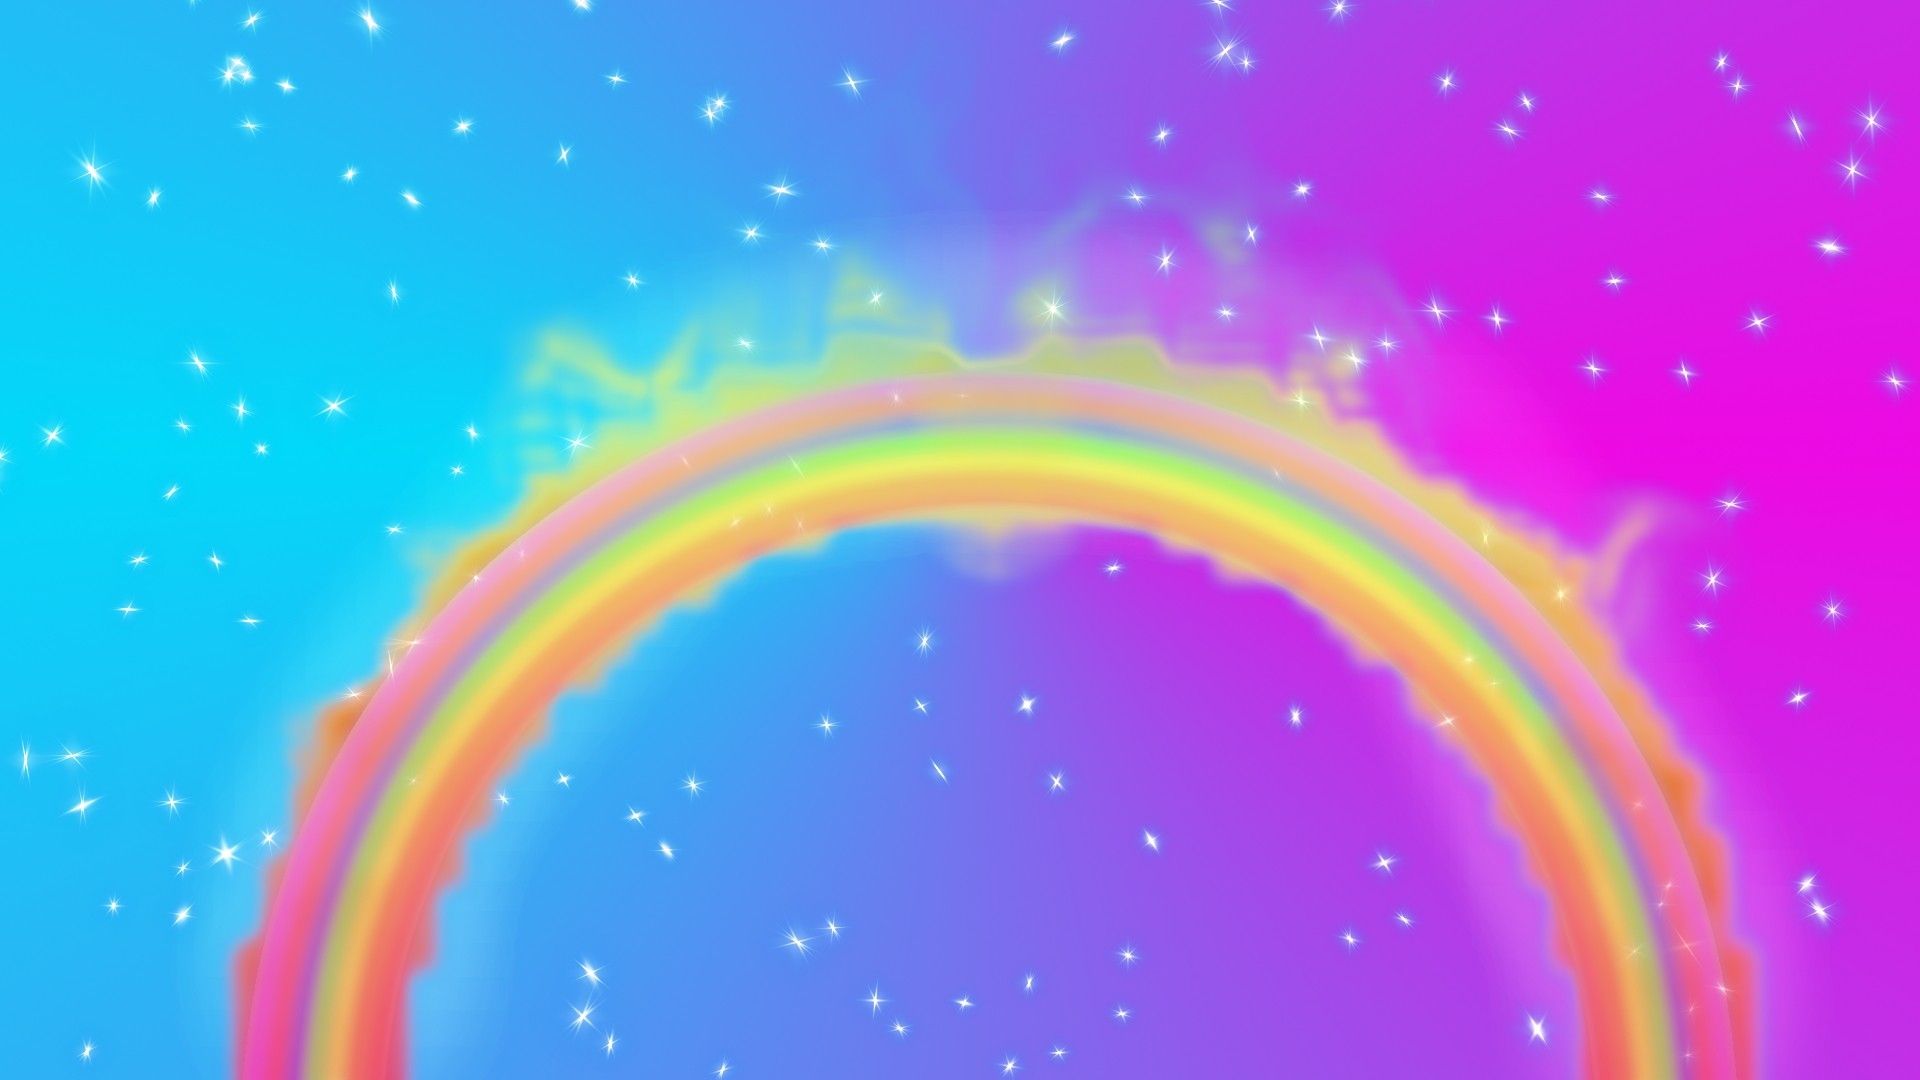 Rainbow Aesthetic Desktop Wallpapers Free Download 